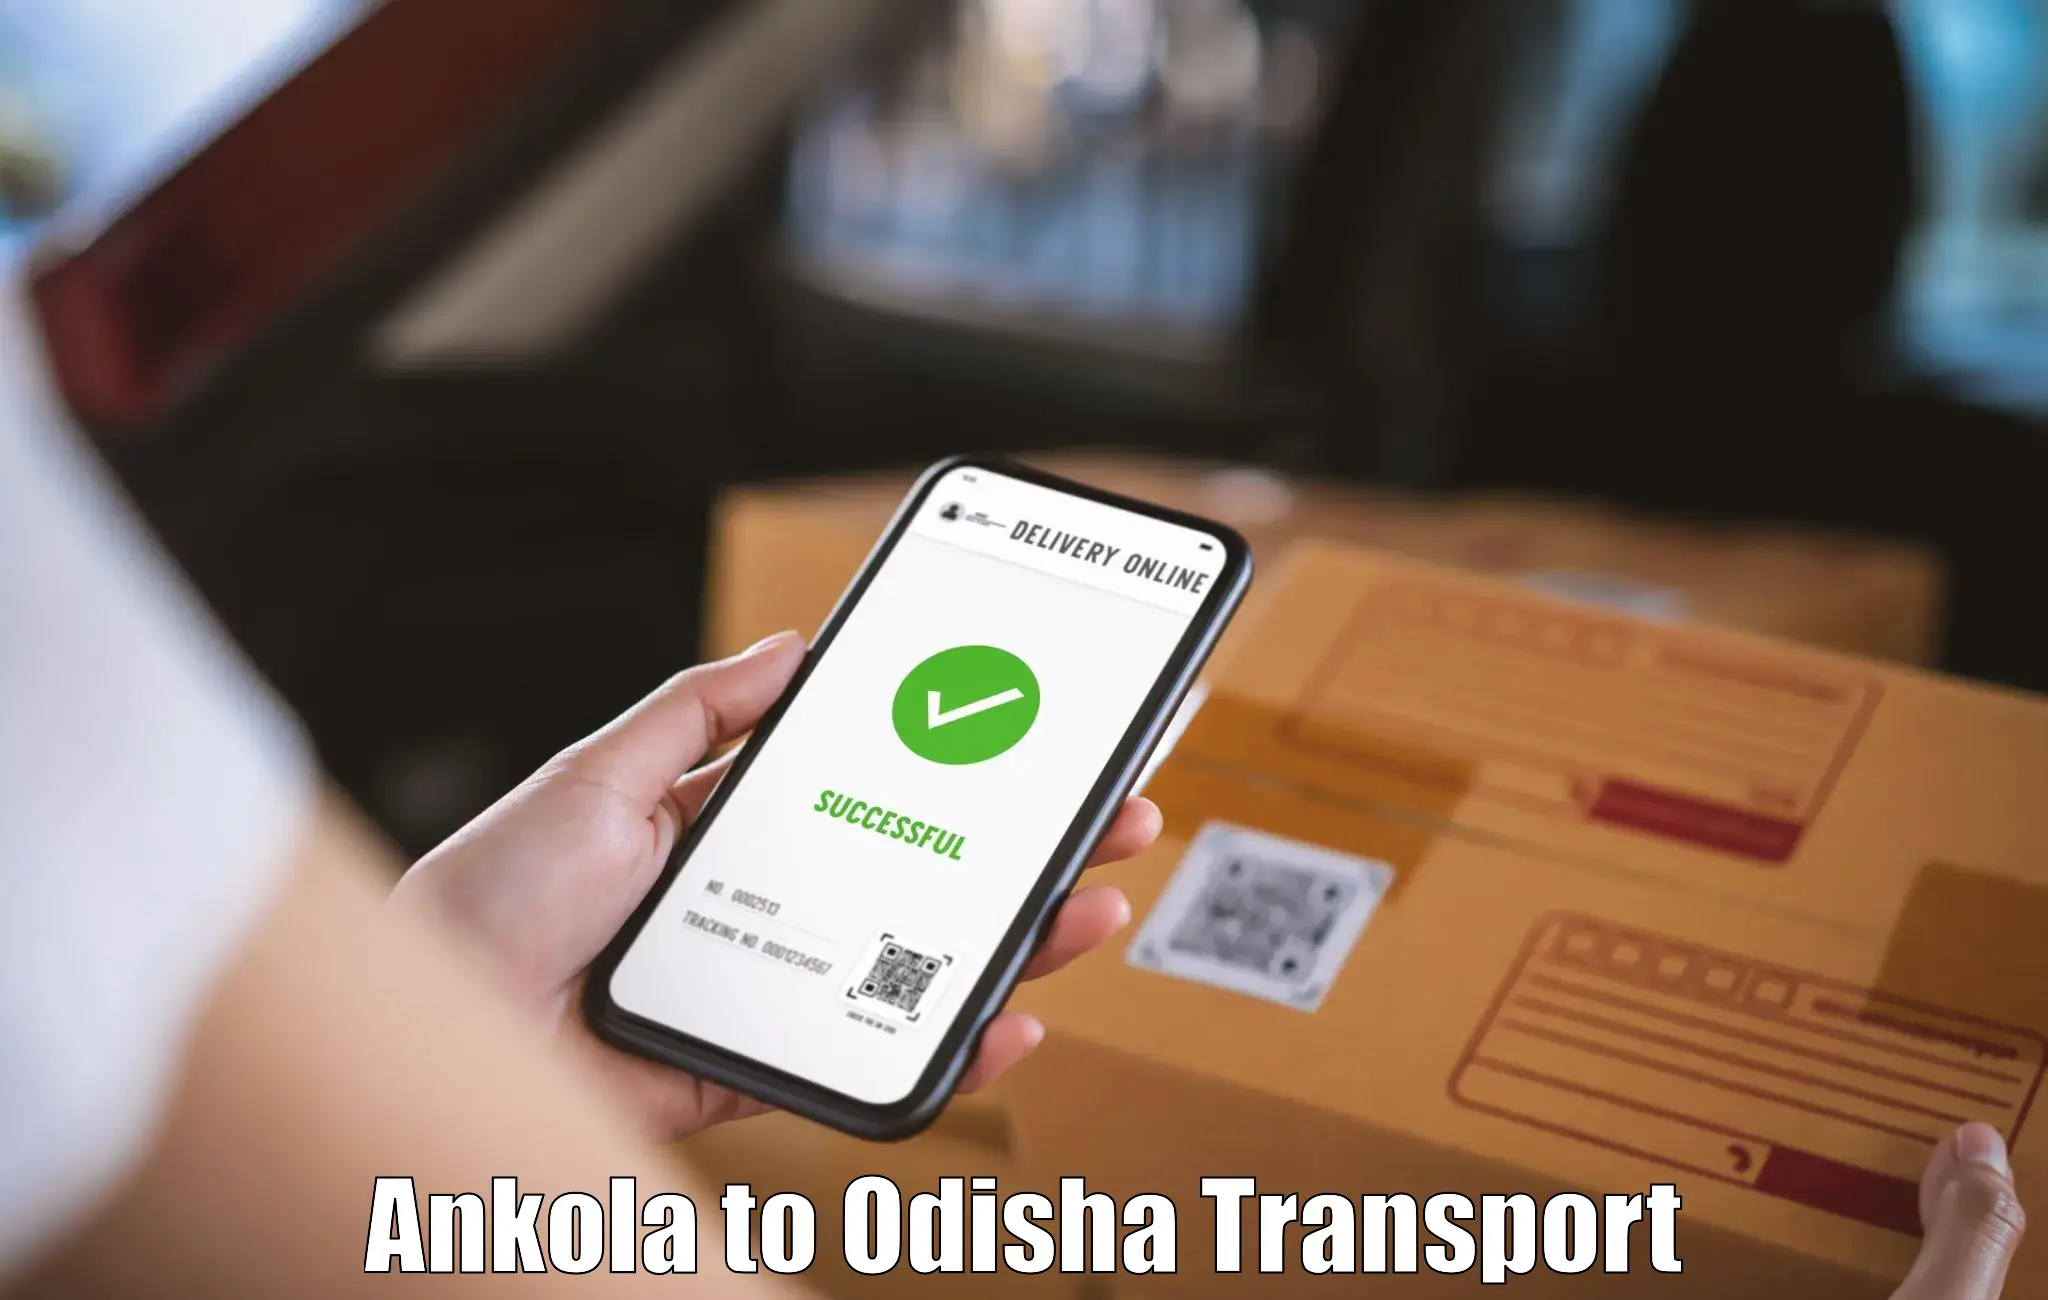 Shipping services Ankola to Odisha